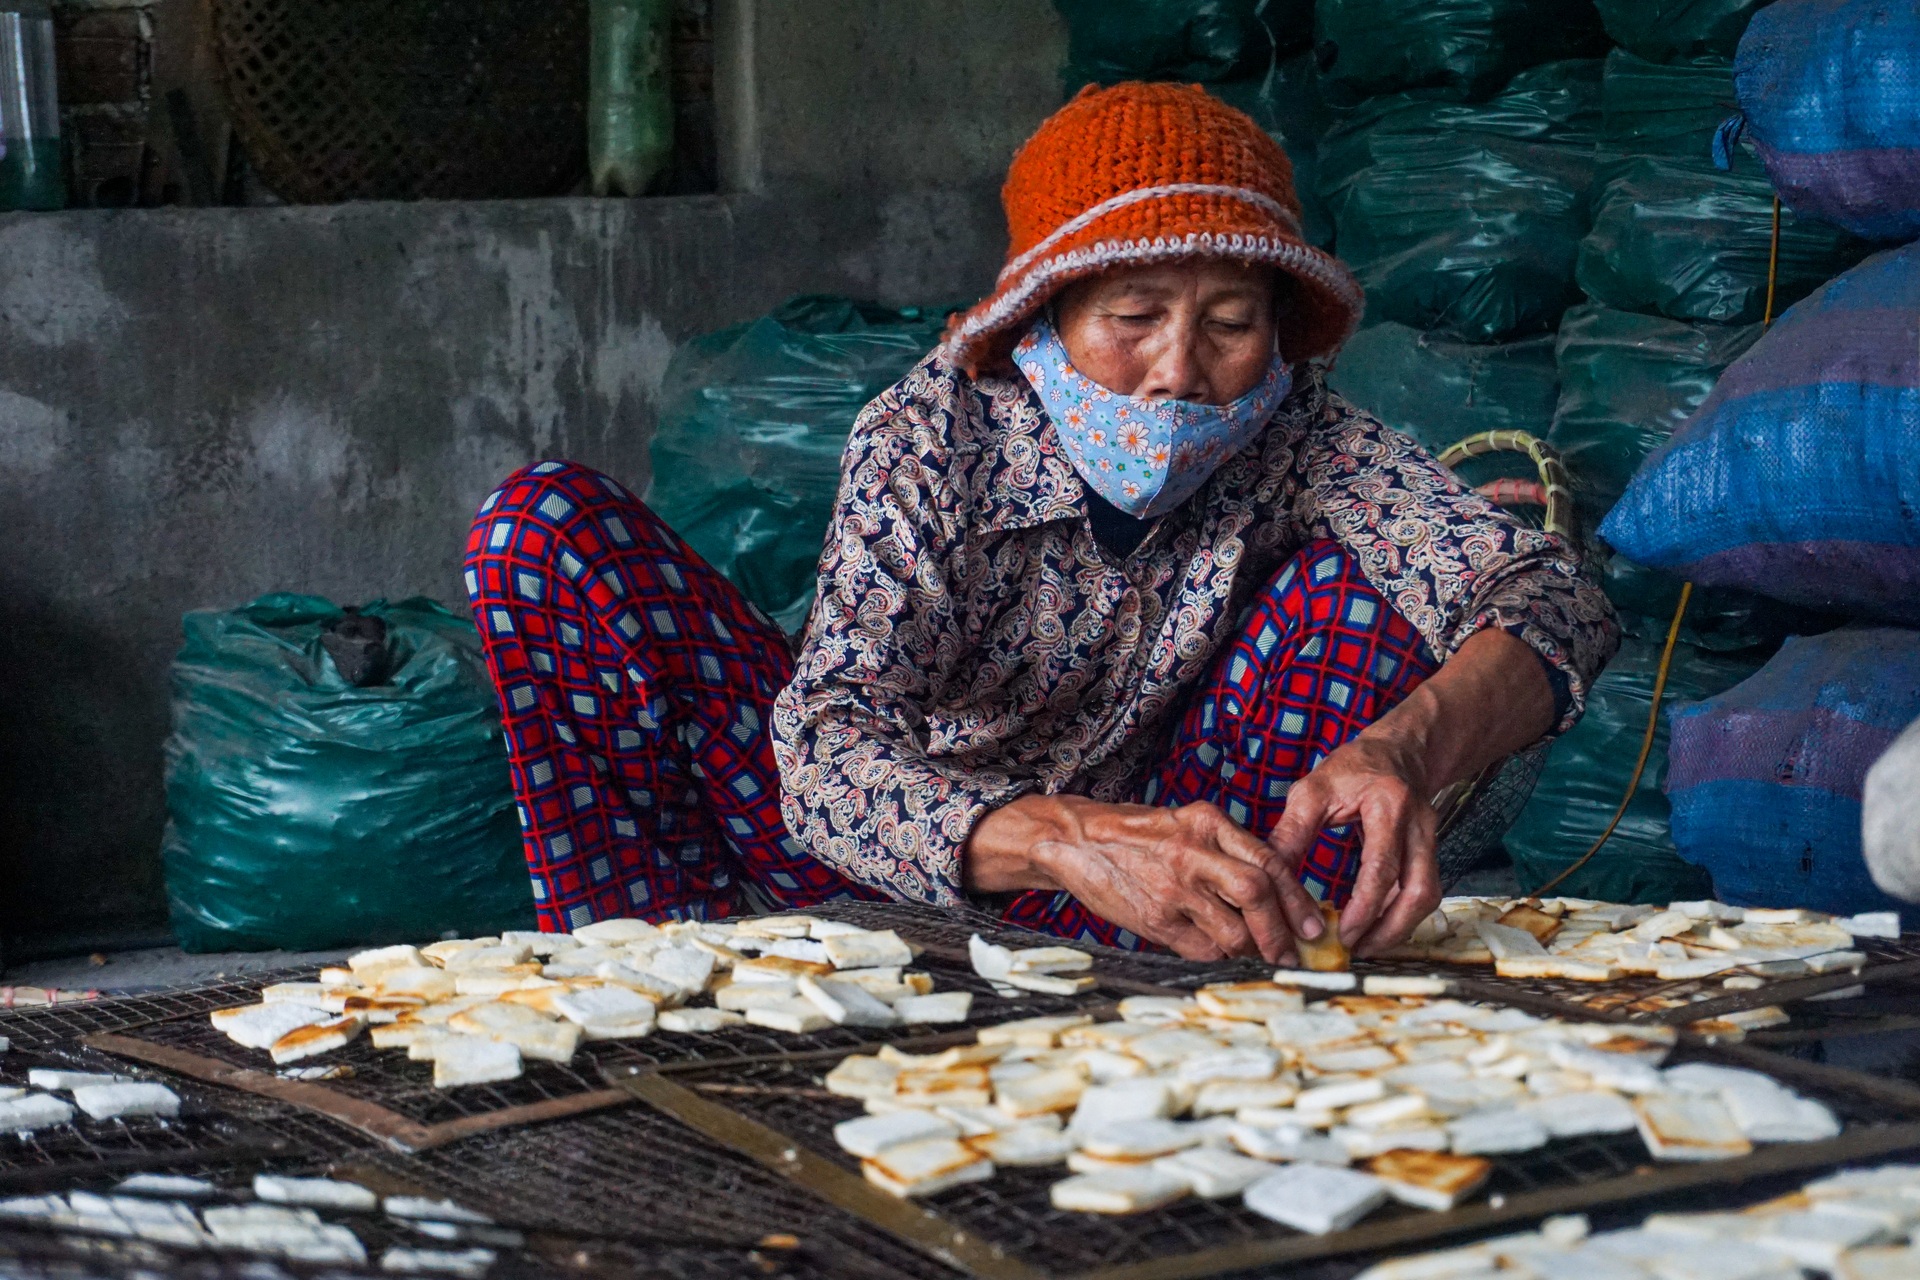 Làng bánh bảy lửa đặc sản Đà Nẵng làm ngày đêm vẫn không đủ bán Tết - 11